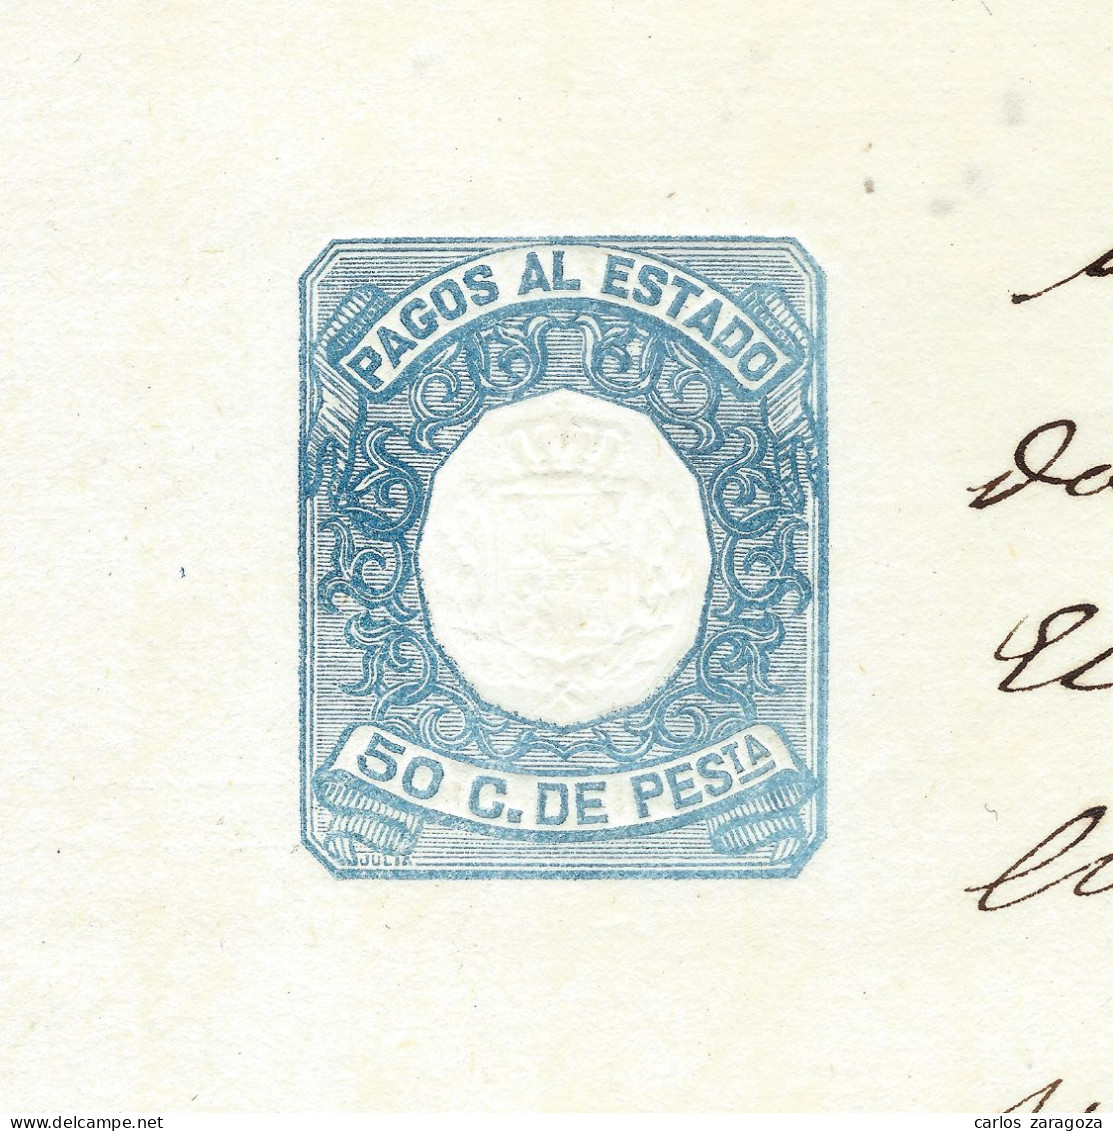 ESPAÑA 1876—PAGOS AL ESTADO 50 Cts—Sello Fiscal SOCIEDAD Del TIMBRE—MARCA DE AGUA: REY ALFONSO XII (ver) - Revenue Stamps